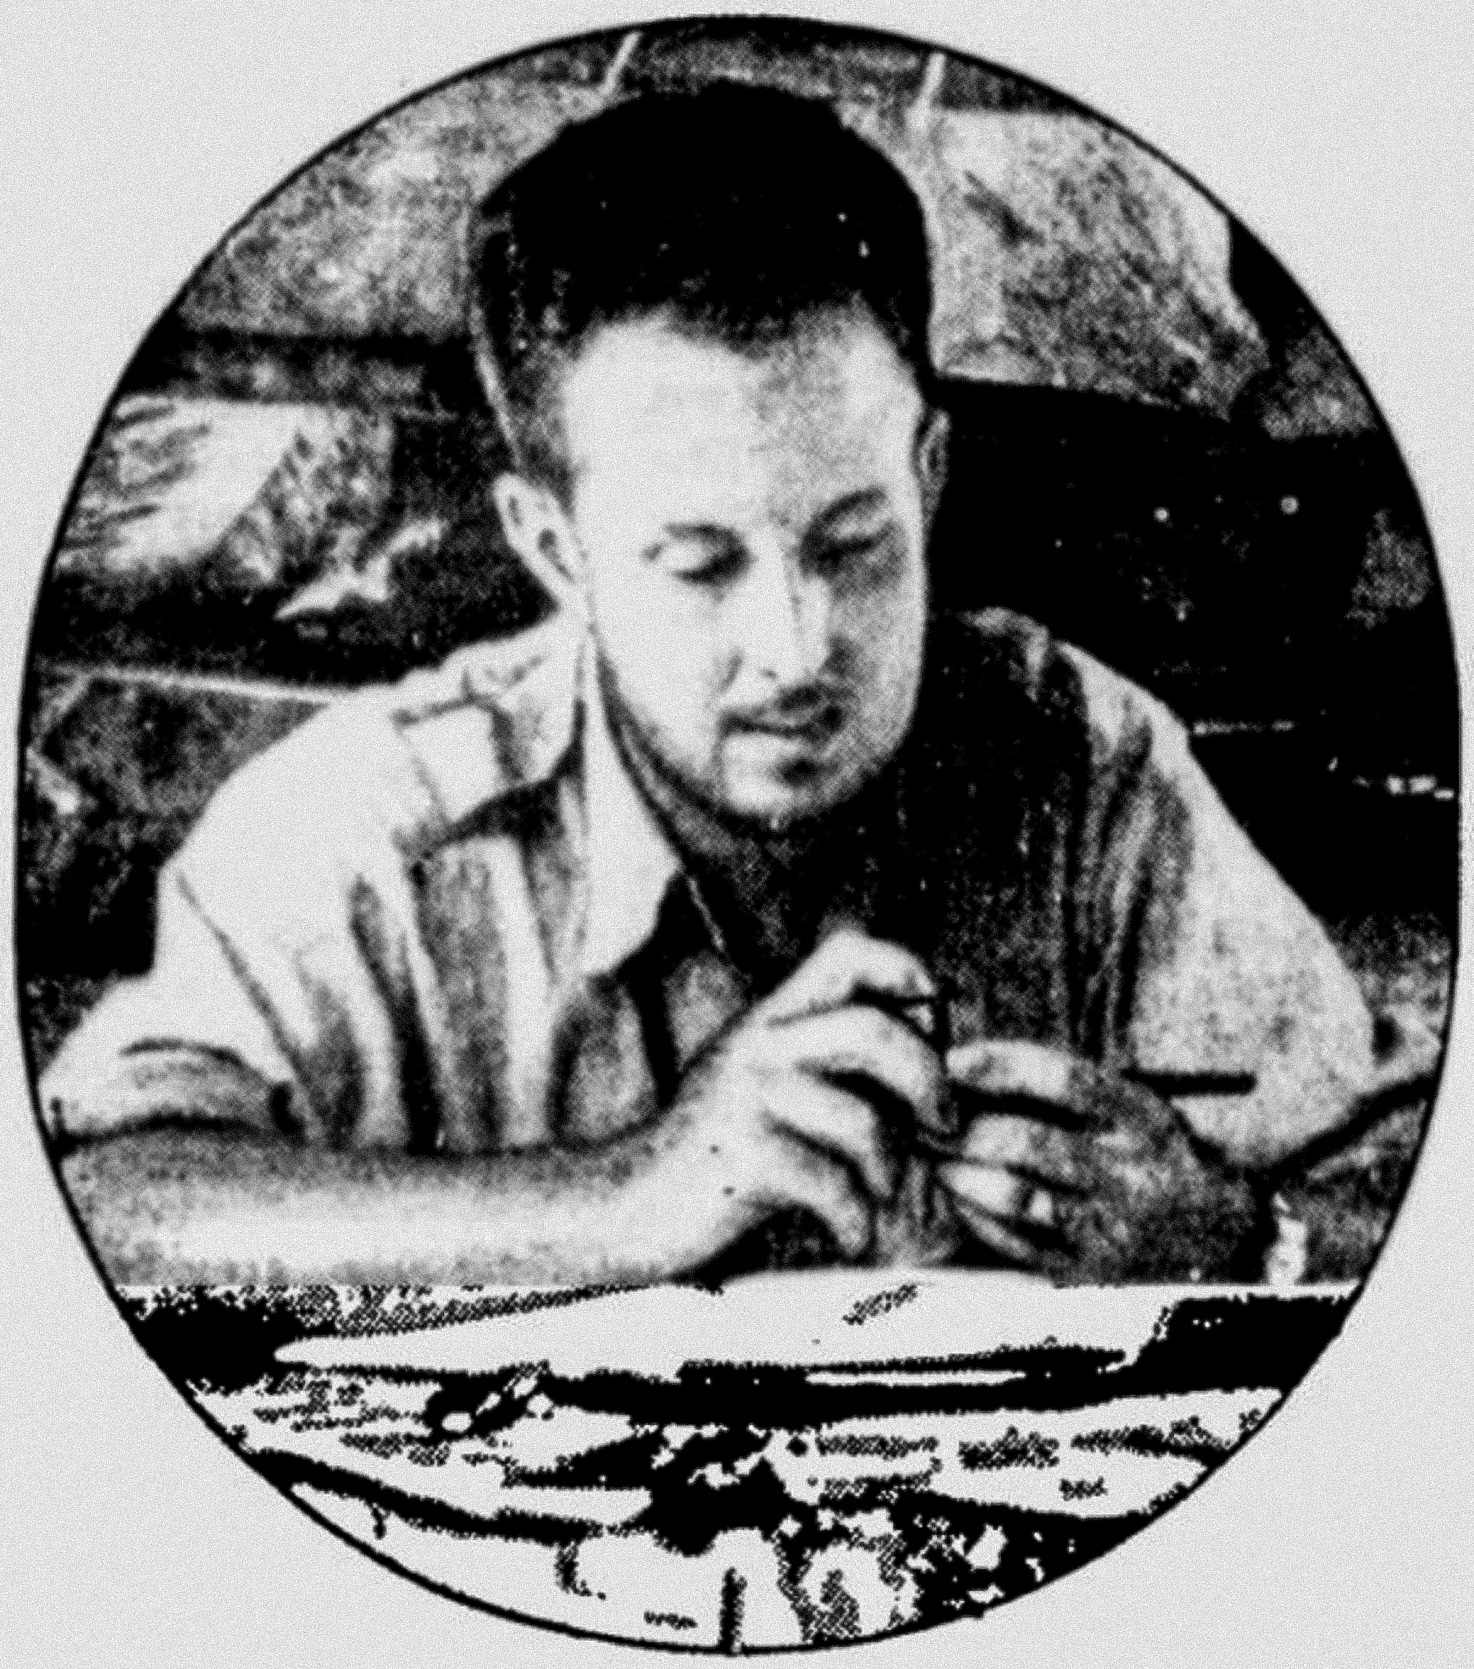 Den amerikanske opdagelsesrejsende Theodore Morde sad ved sit skrivebord i den honduranske regnskov, mens han udforskede la Mosquitia i 1940